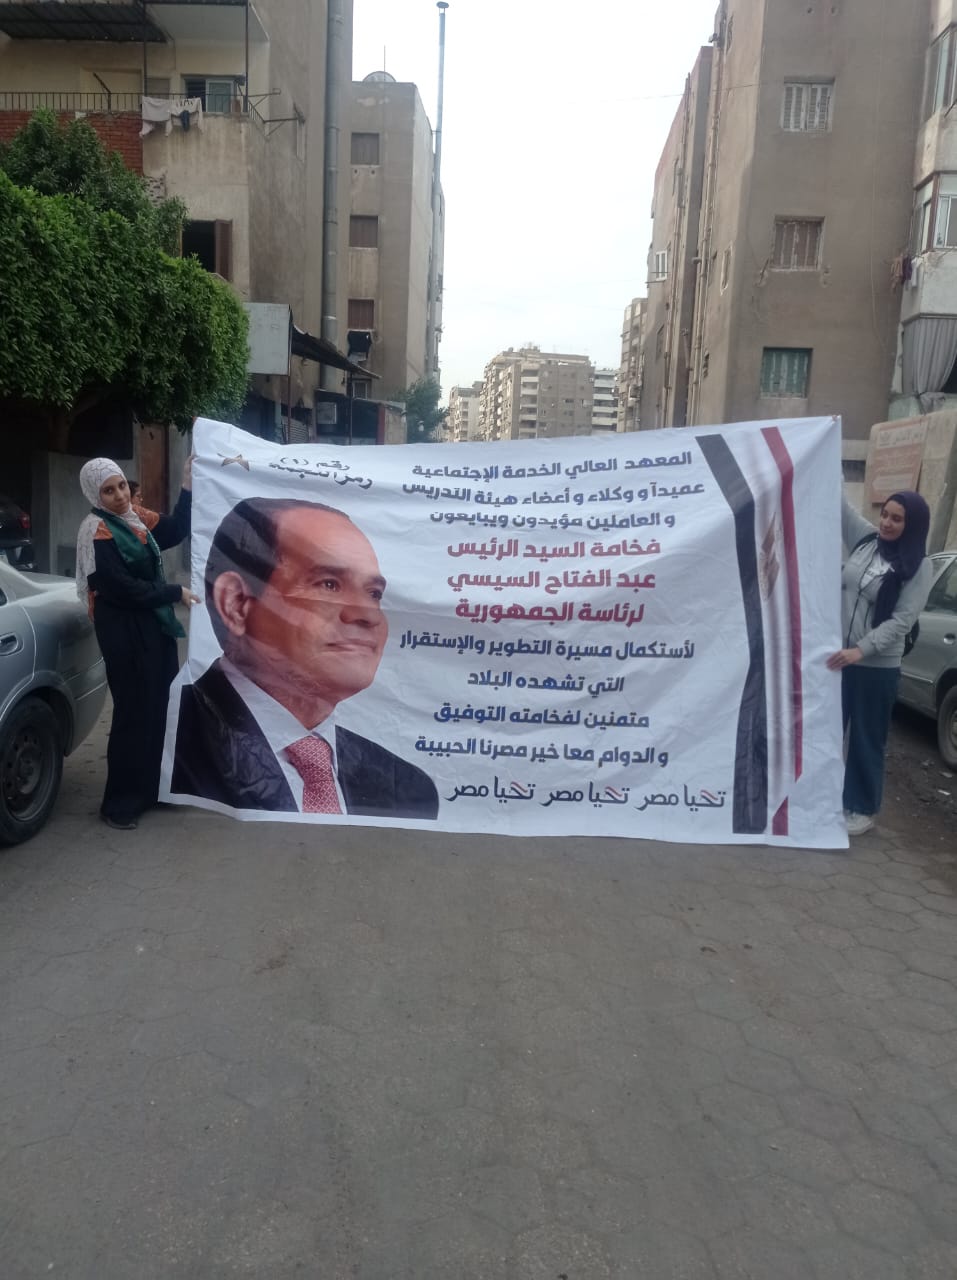 طلاب خدمة اجتماعية بالقاهرة يدعمون المرشح الرئاسي السيسي